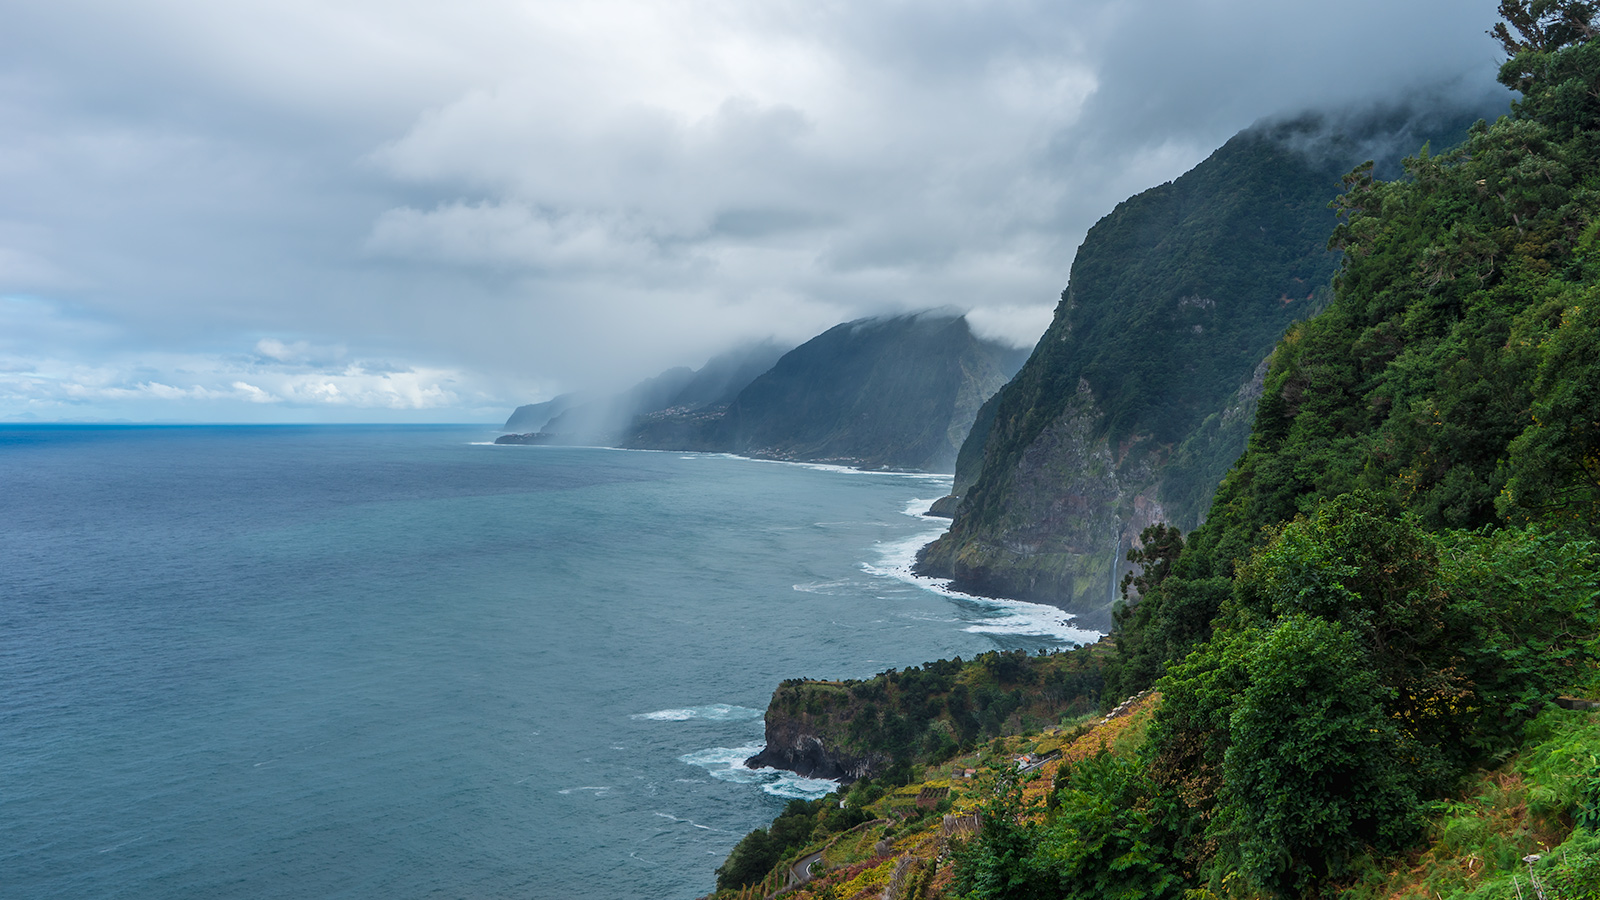 Views of the North coast at Madeira